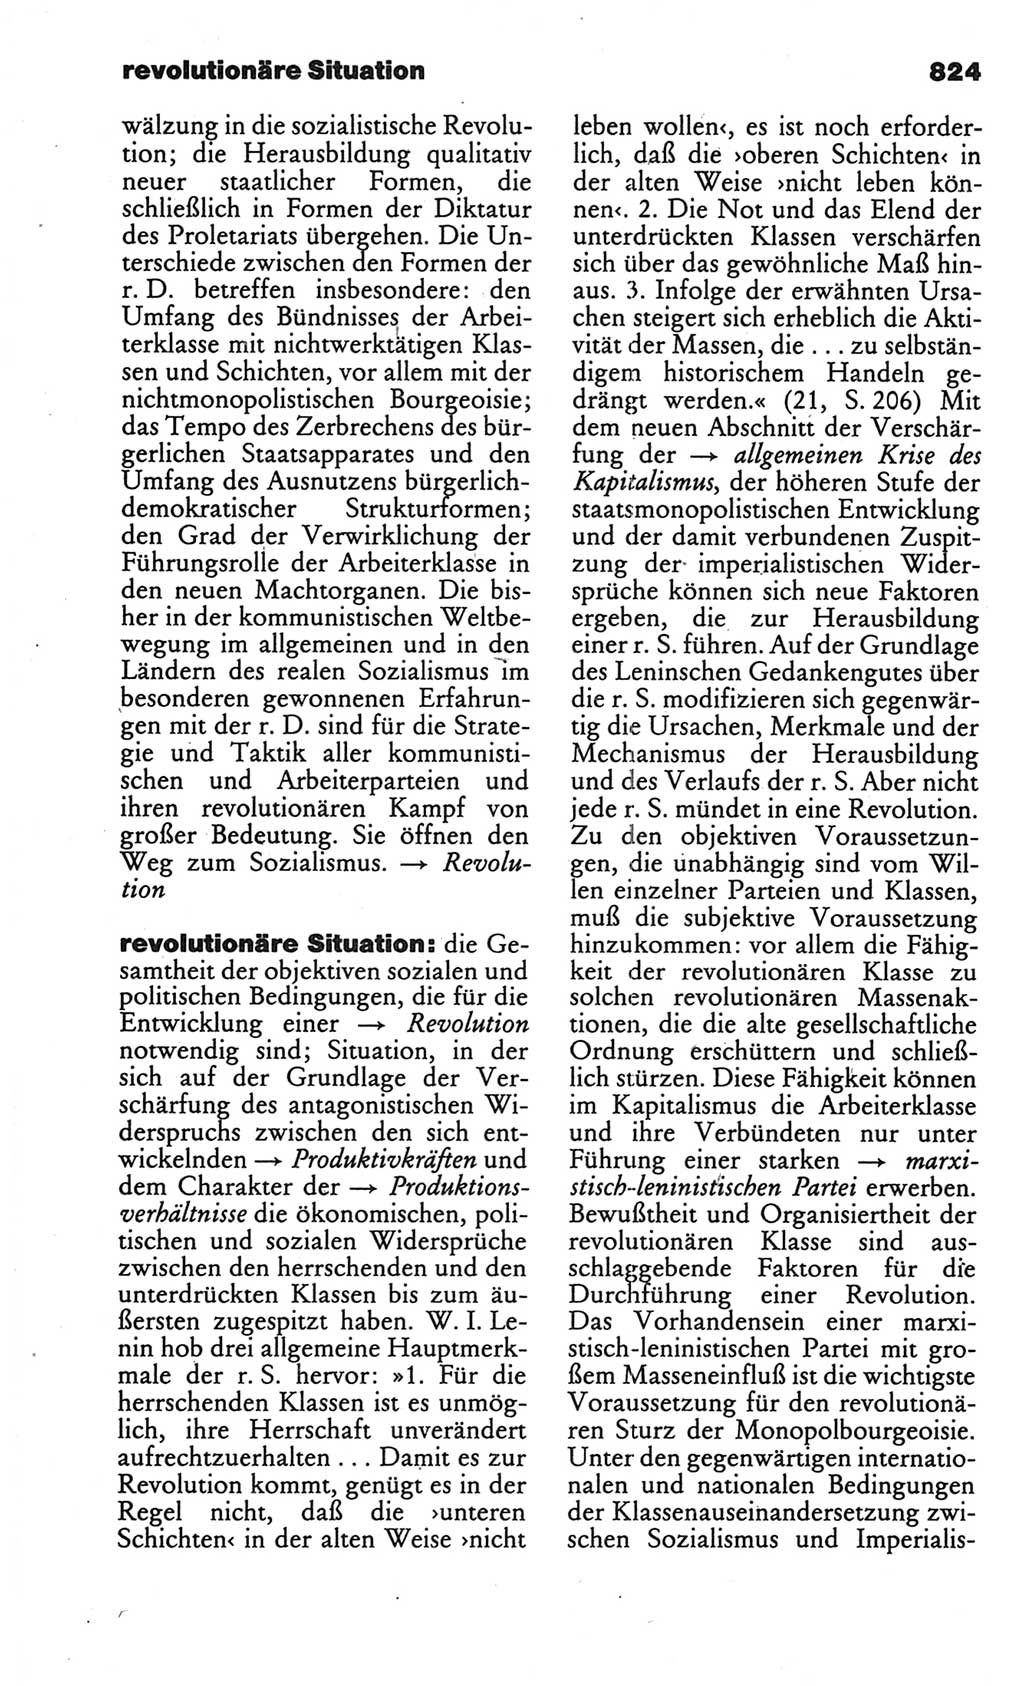 Kleines politisches Wörterbuch [Deutsche Demokratische Republik (DDR)] 1986, Seite 824 (Kl. pol. Wb. DDR 1986, S. 824)